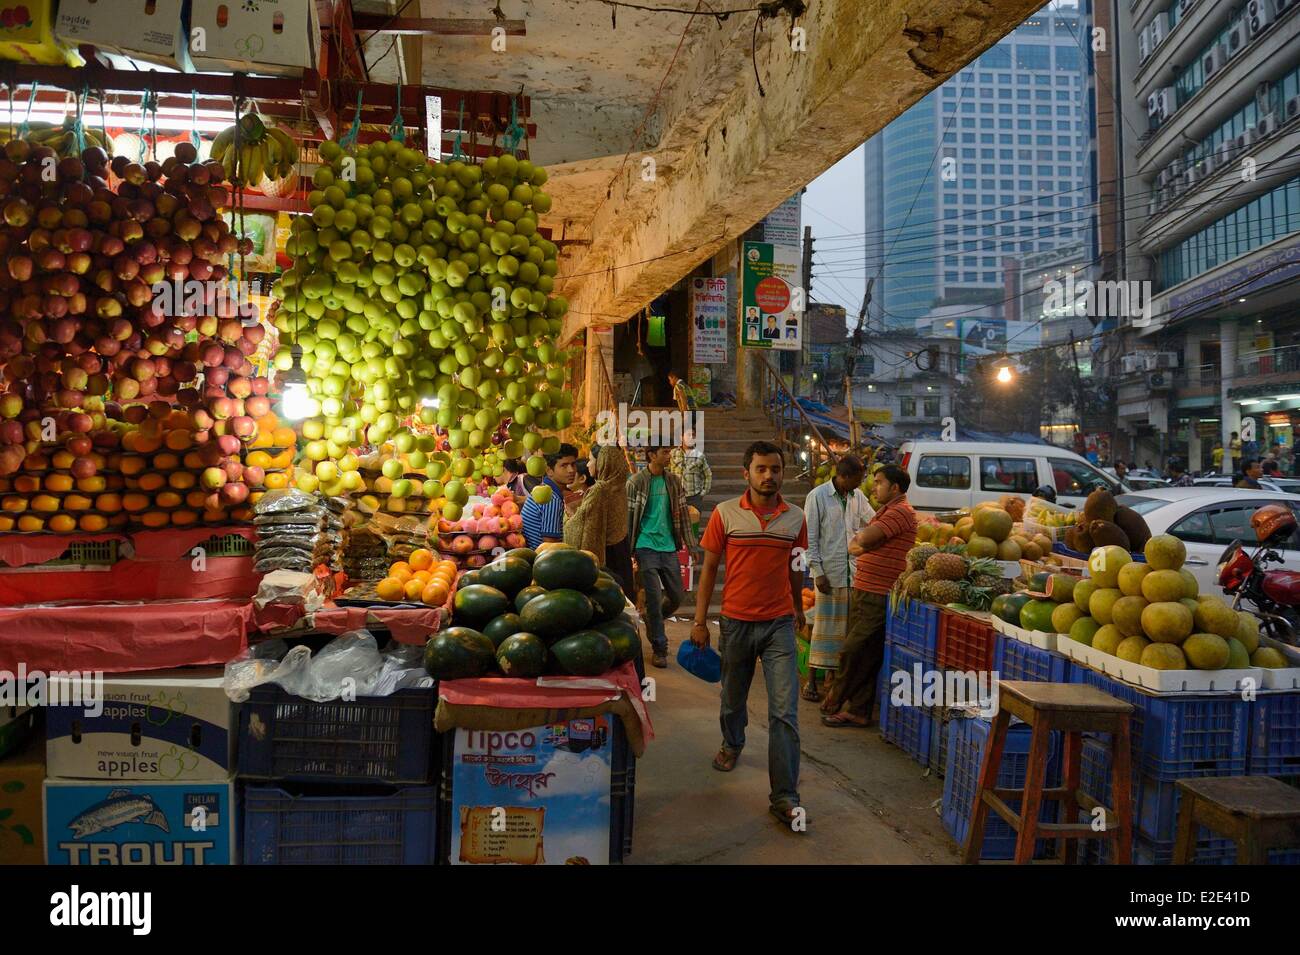 Bangladesh Dhaka (Dacca) market in Gulshan area Stock Photo